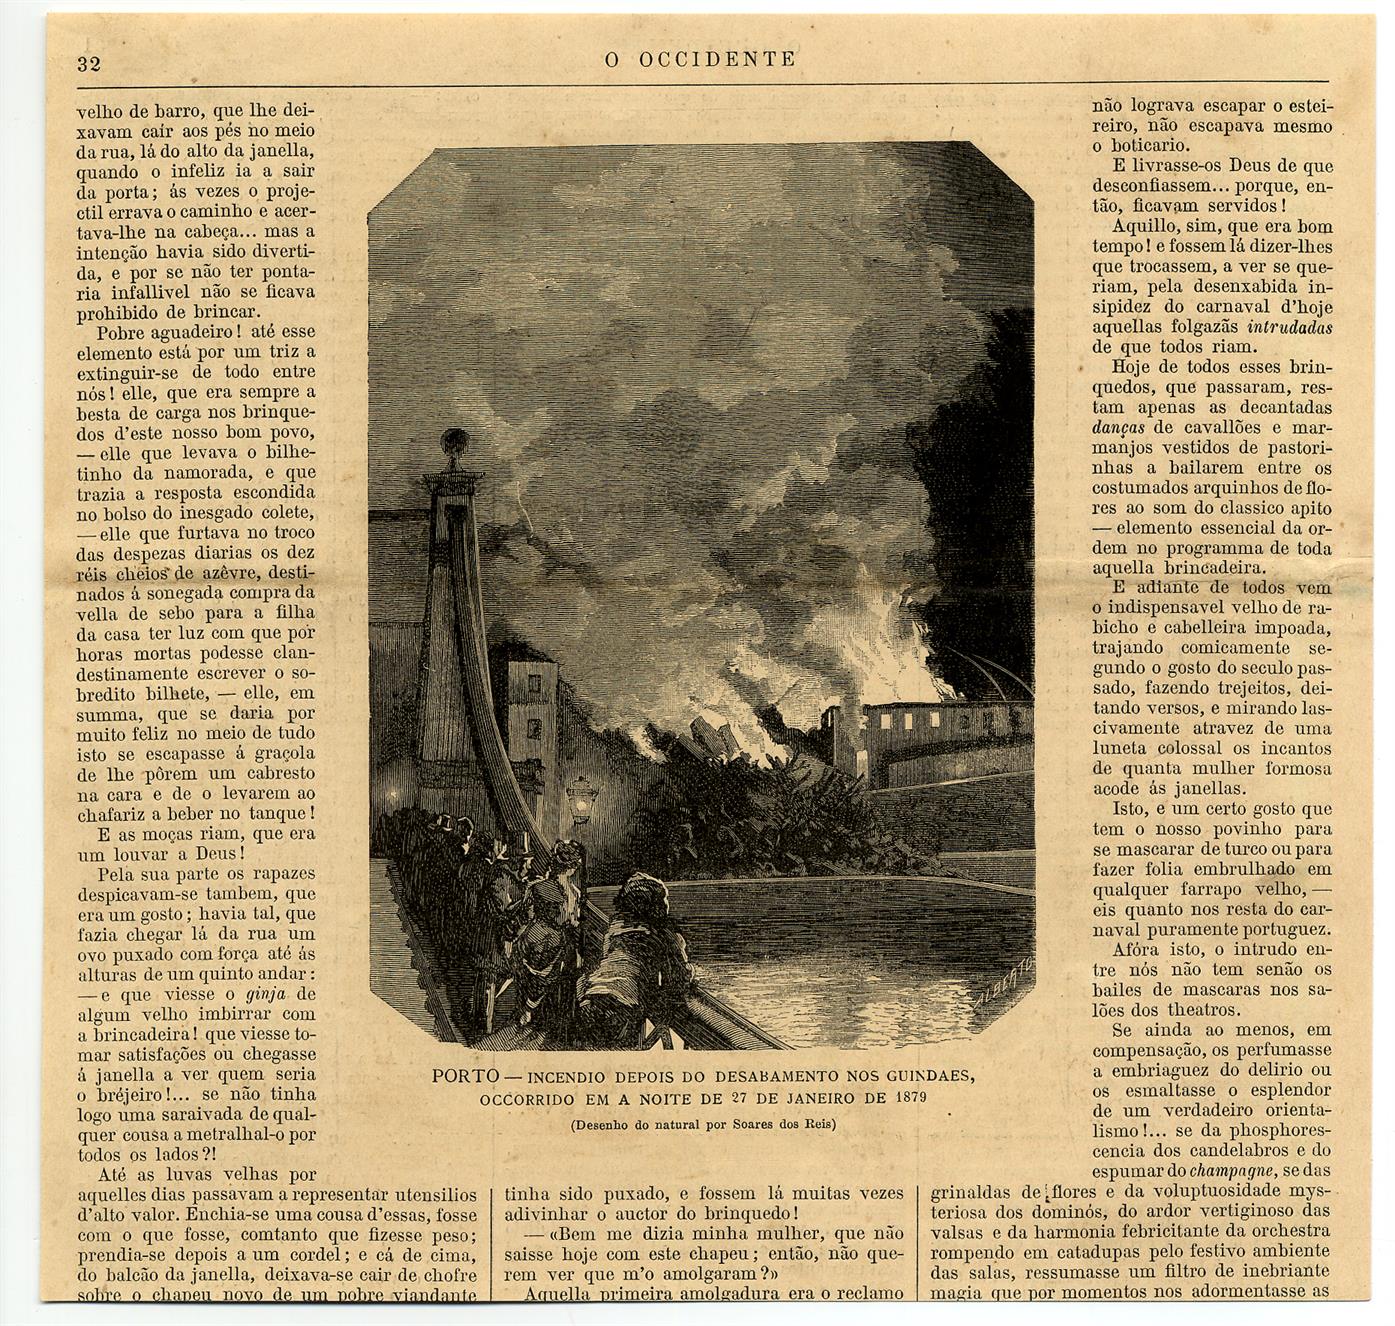 Incêndio depois do desabamento nos Guindais, ocorrido em a noite de 27 de Janeiro de 1879